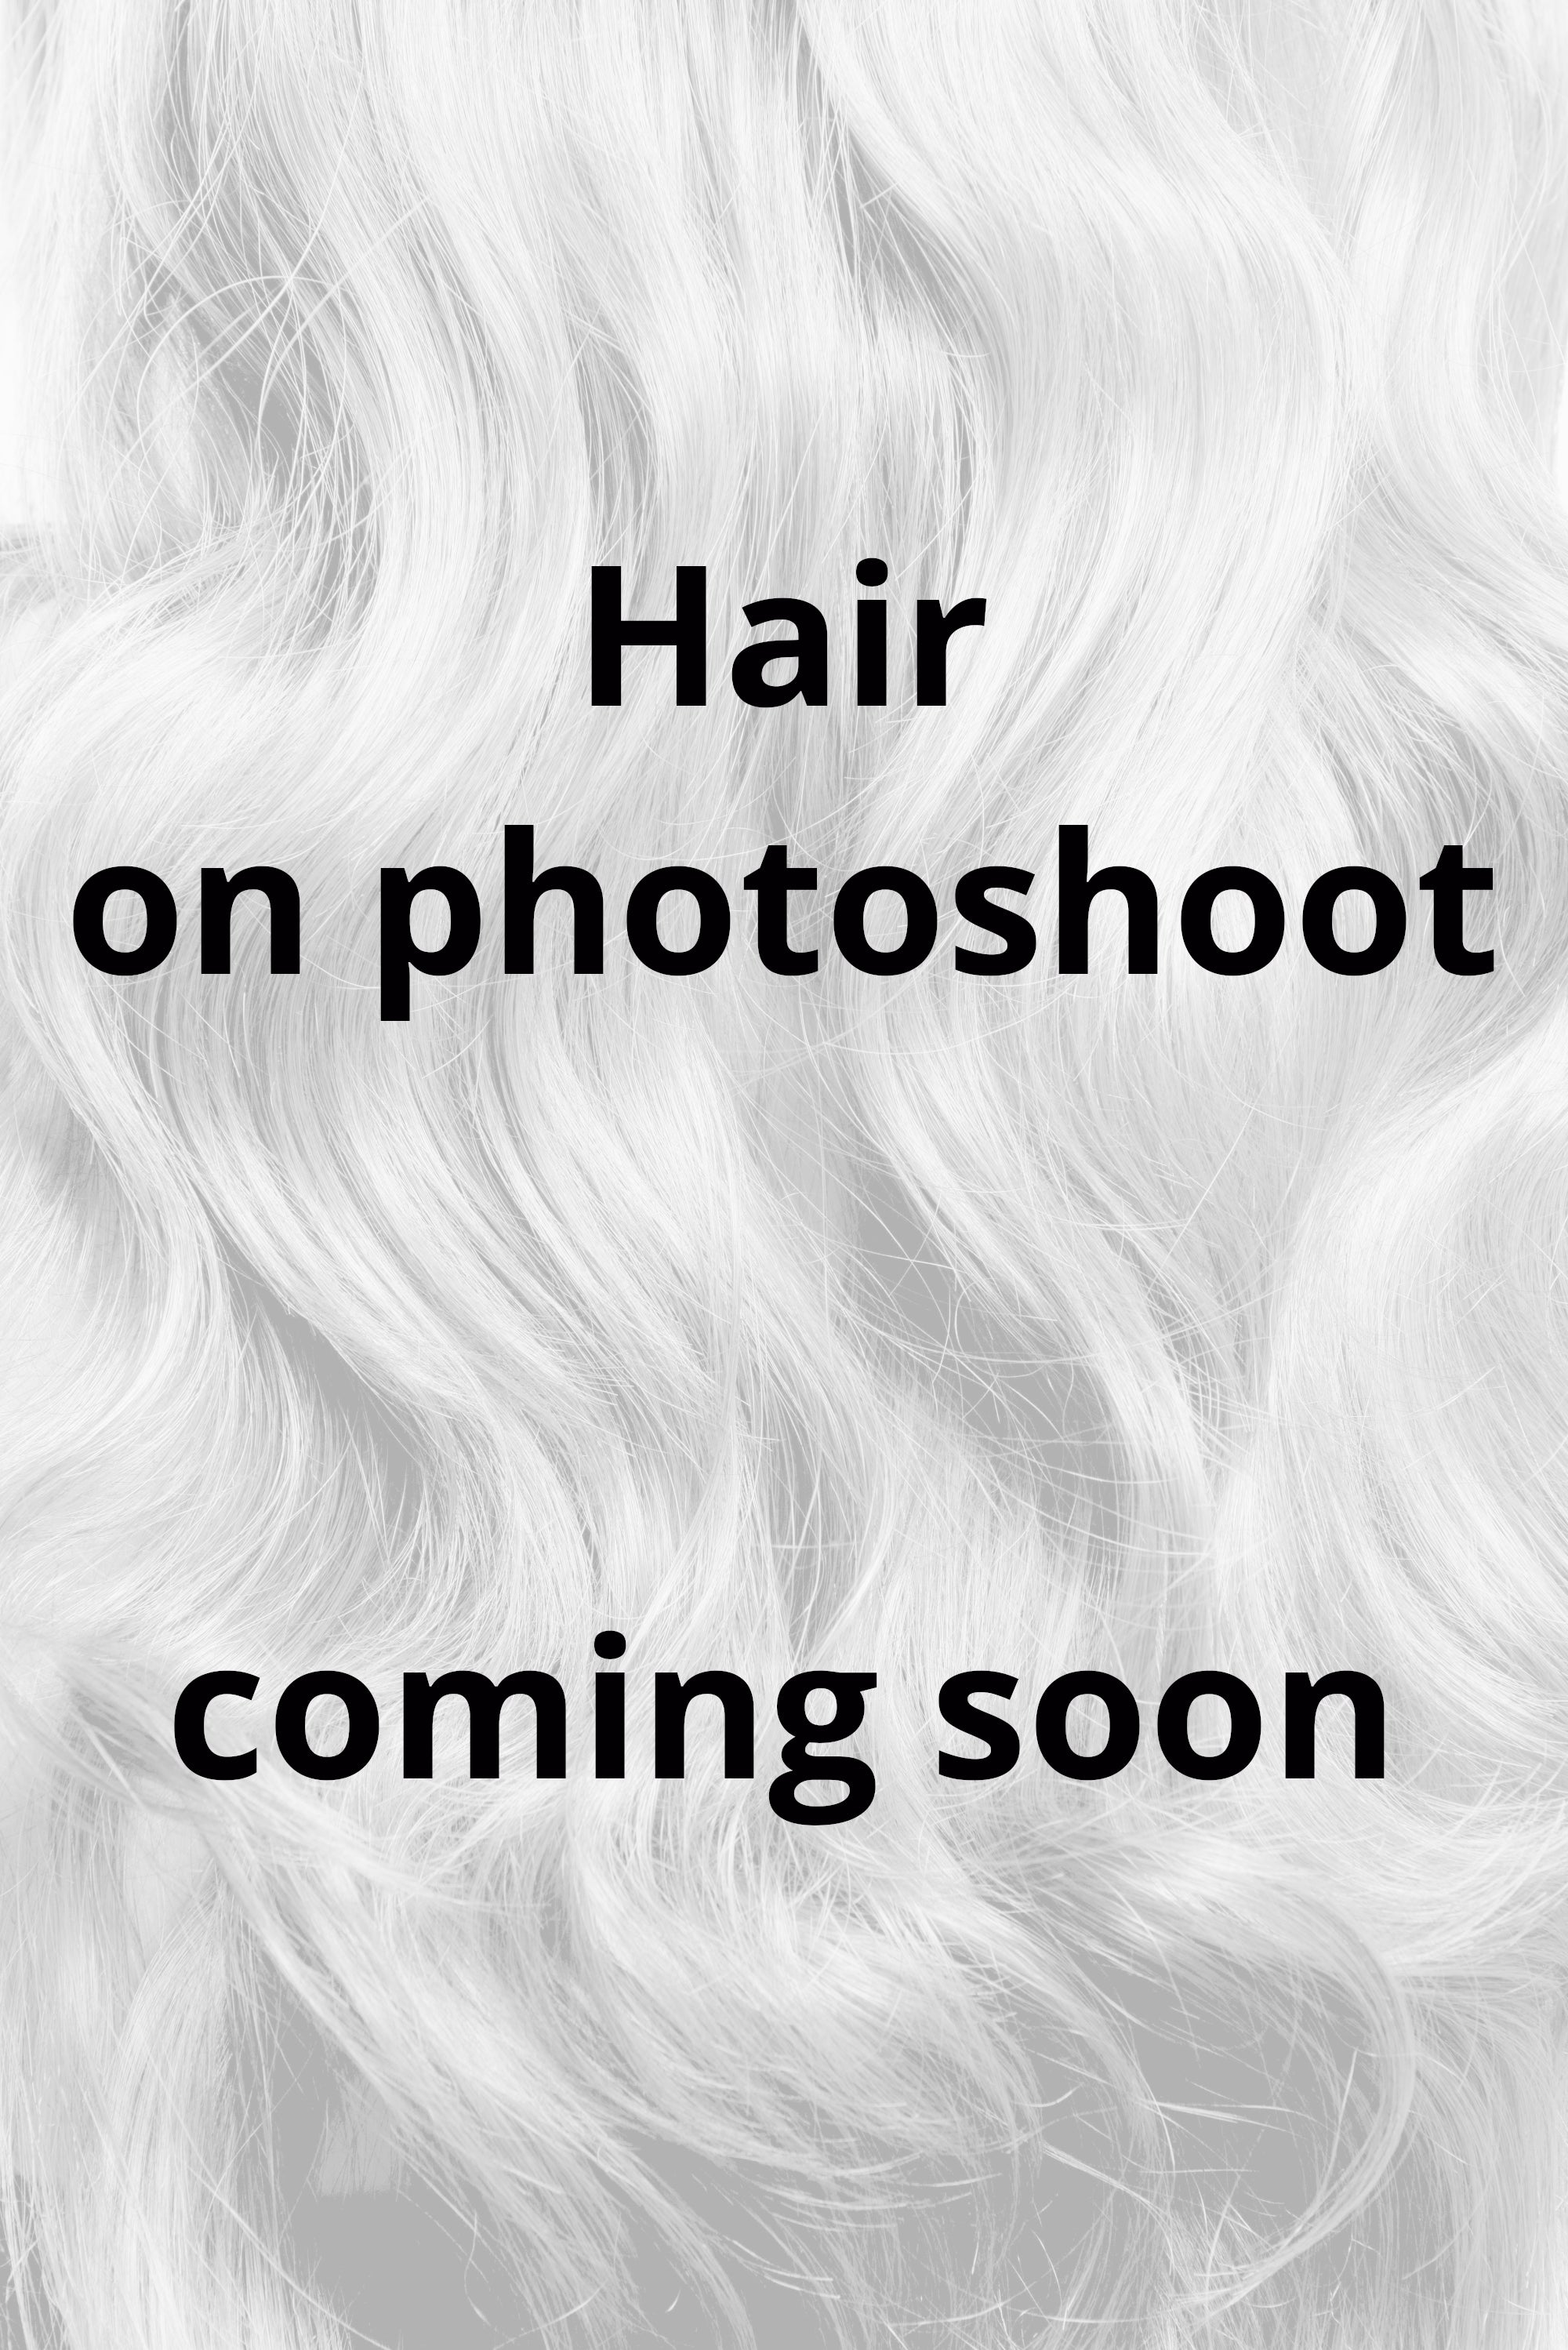 Behair professional Keratin Tip "Premium" 28" (70cm) Natural Wave Beach Blonde #613 - 25g (Micro - 0.5g each pcs) hair extensions